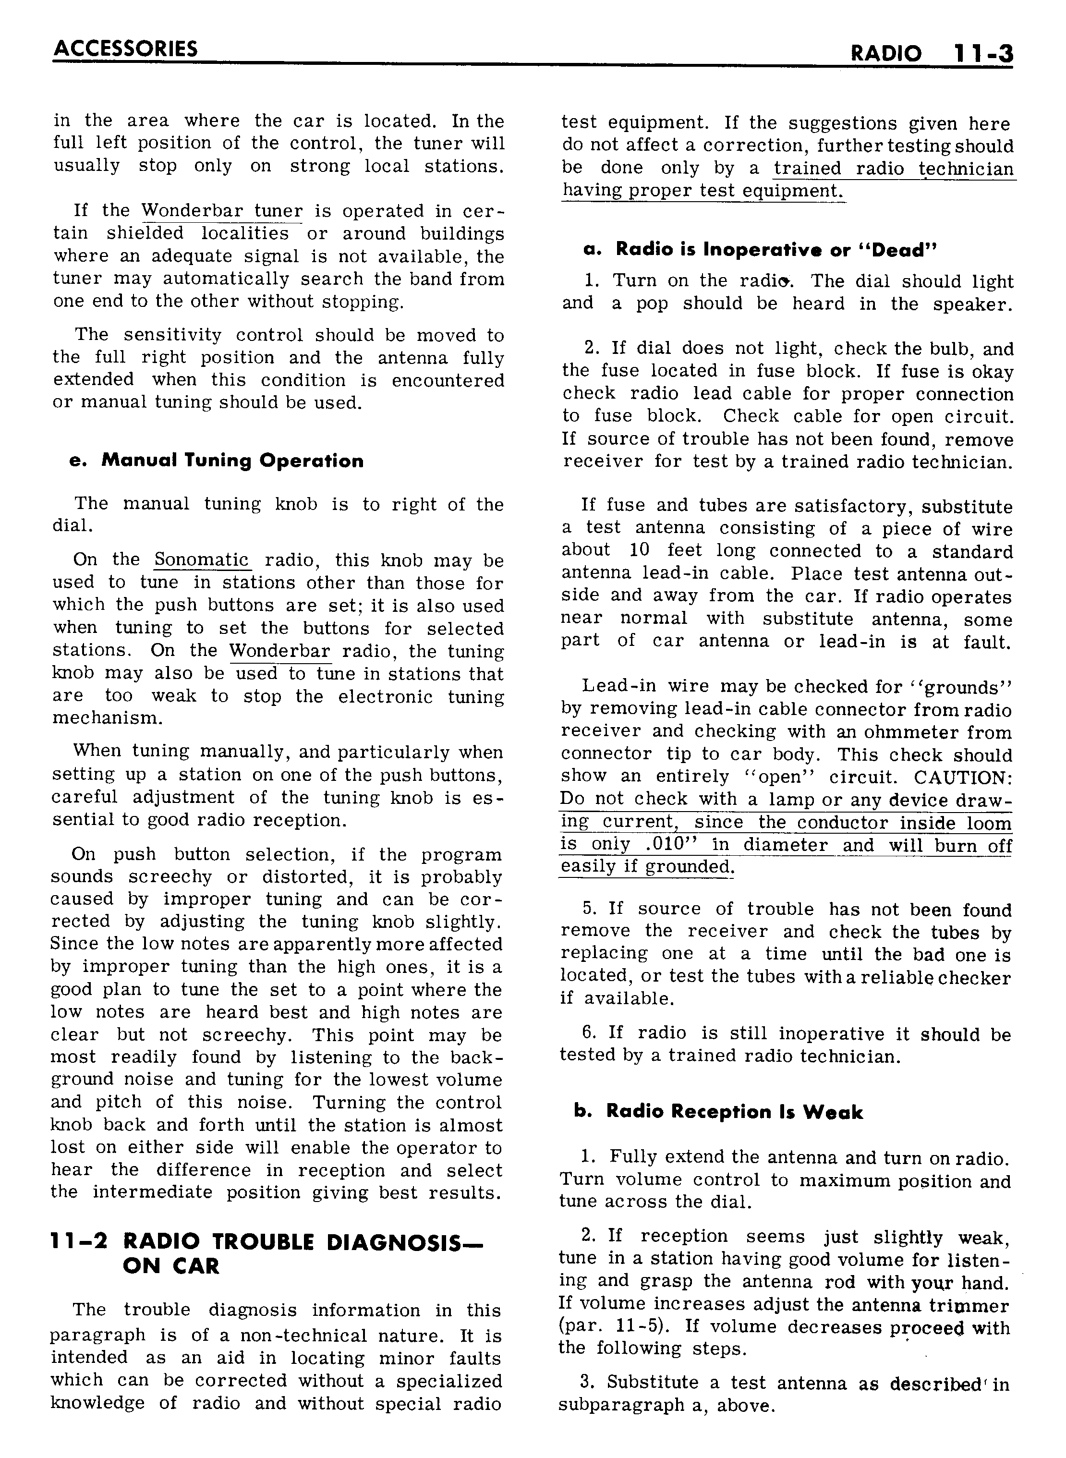 n_11 1961 Buick Shop Manual - Accessories-003-003.jpg